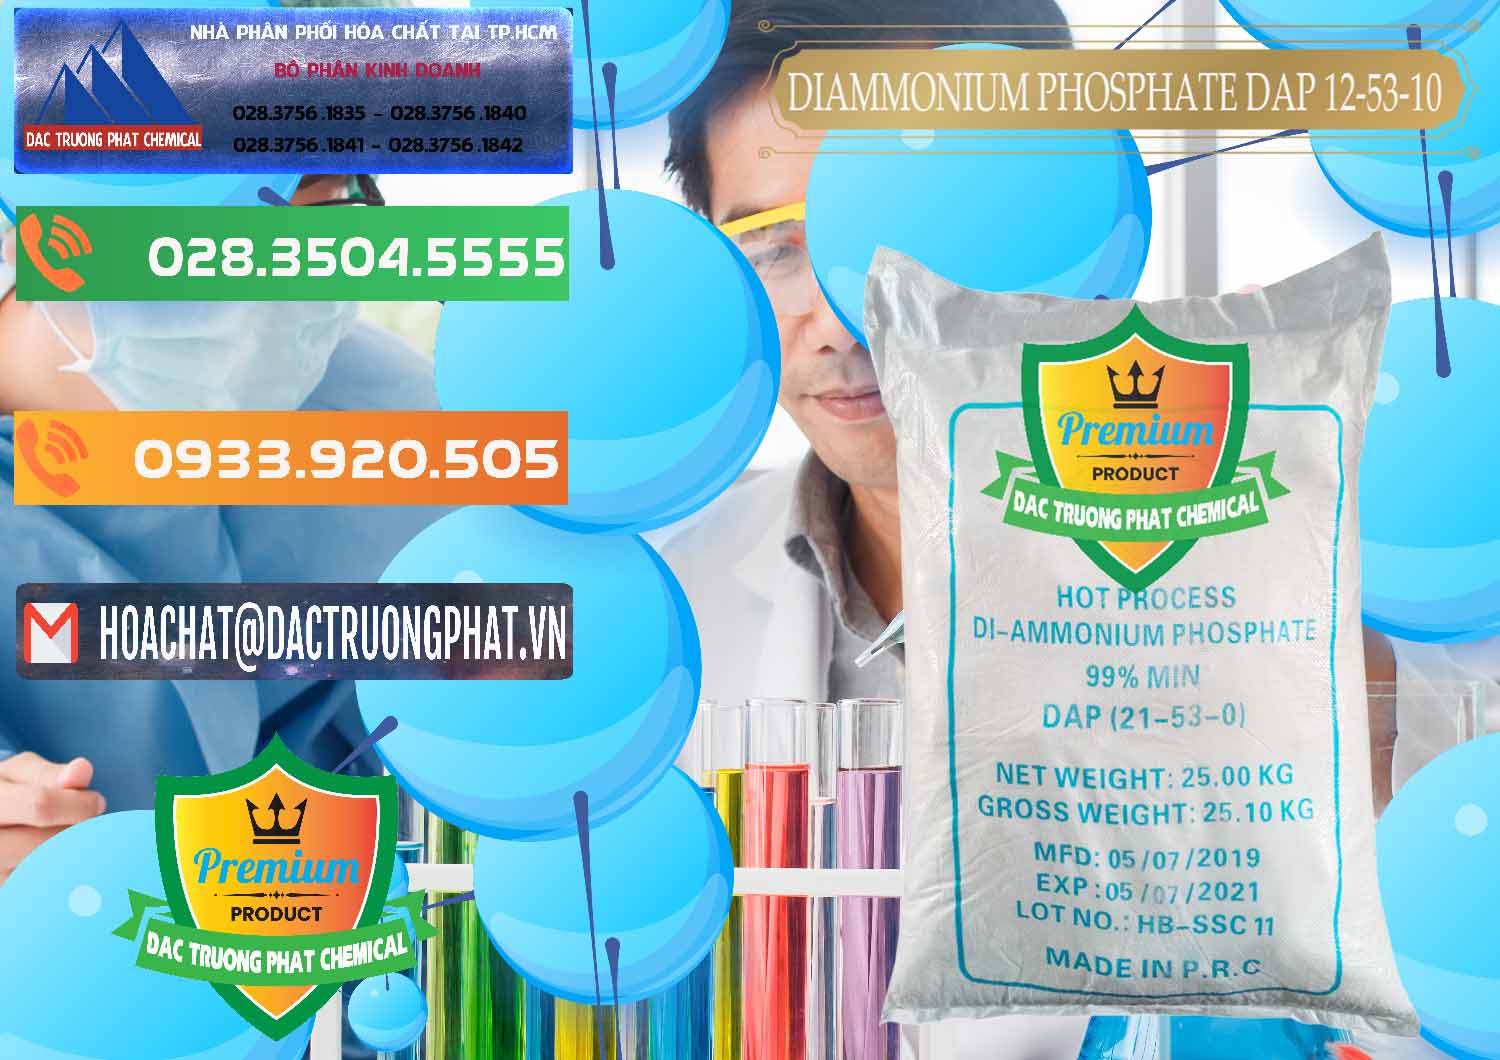 Công ty cung ứng & bán DAP - Diammonium Phosphate Trung Quốc China - 0319 - Cty nhập khẩu ( phân phối ) hóa chất tại TP.HCM - hoachatxulynuoc.com.vn